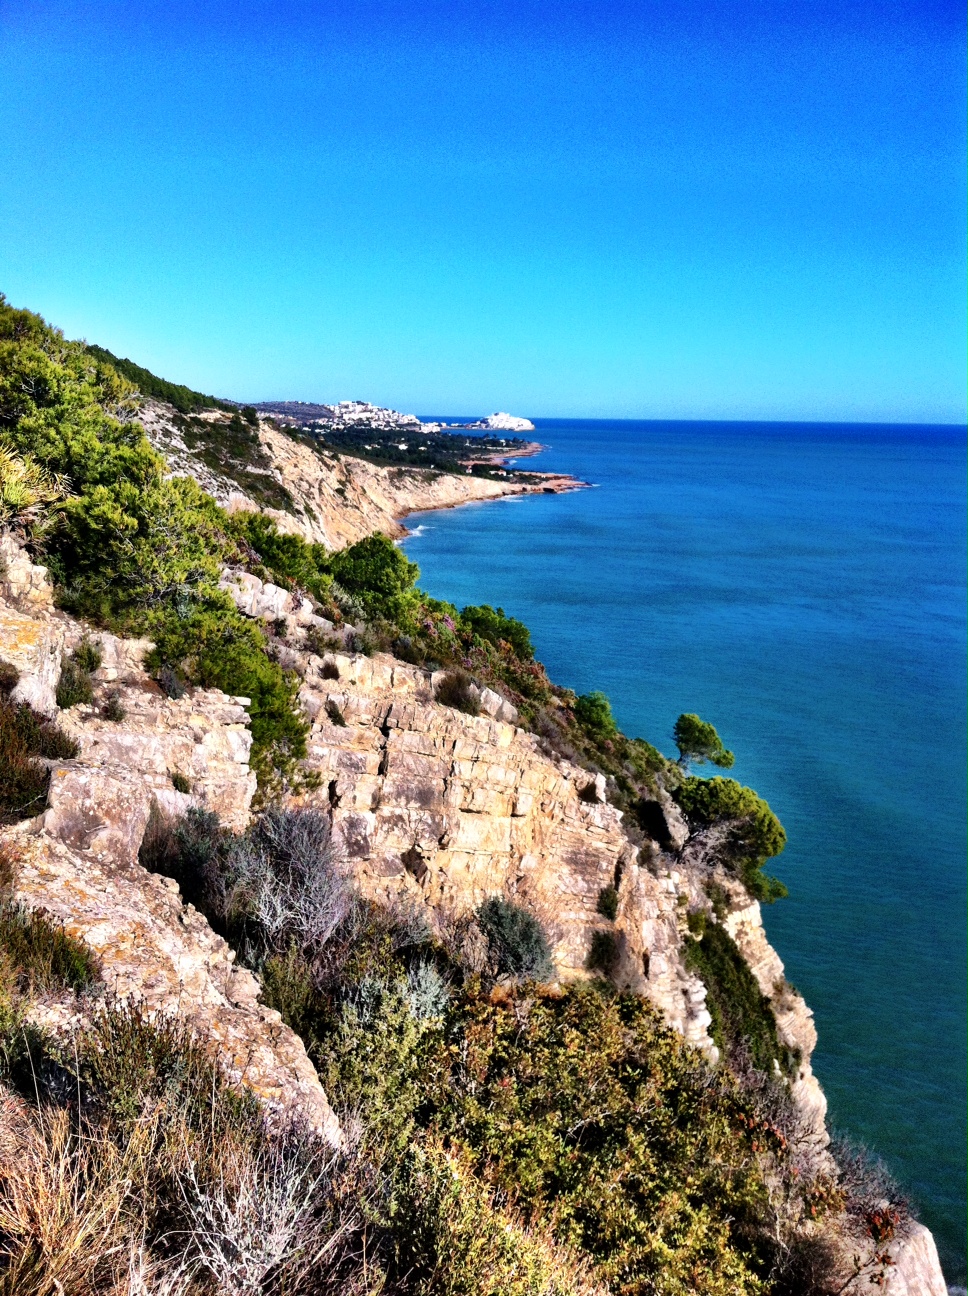 The View Along the Parc Natural de la Sierra d’Irta Coastal Path